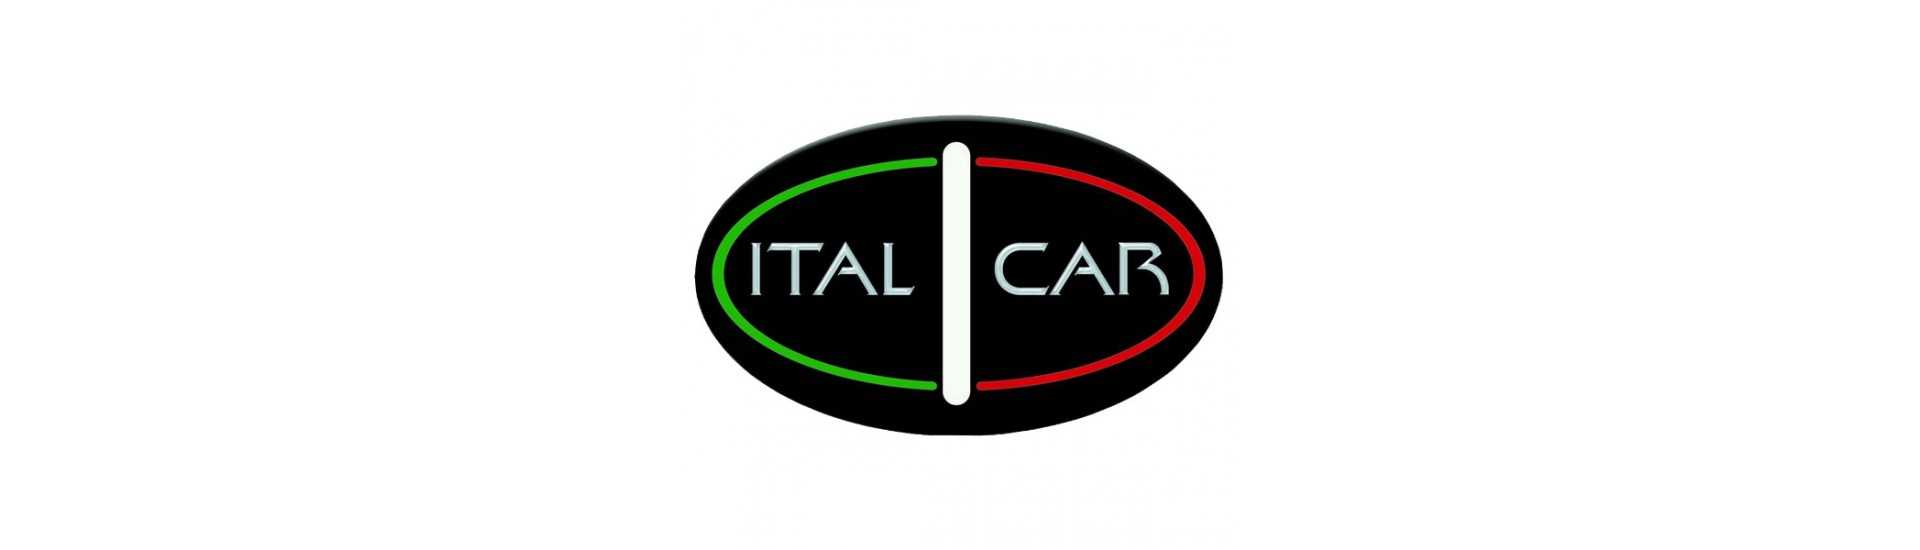 triângulo frontal ao melhor preço para o carro sem uma permissão Italcar